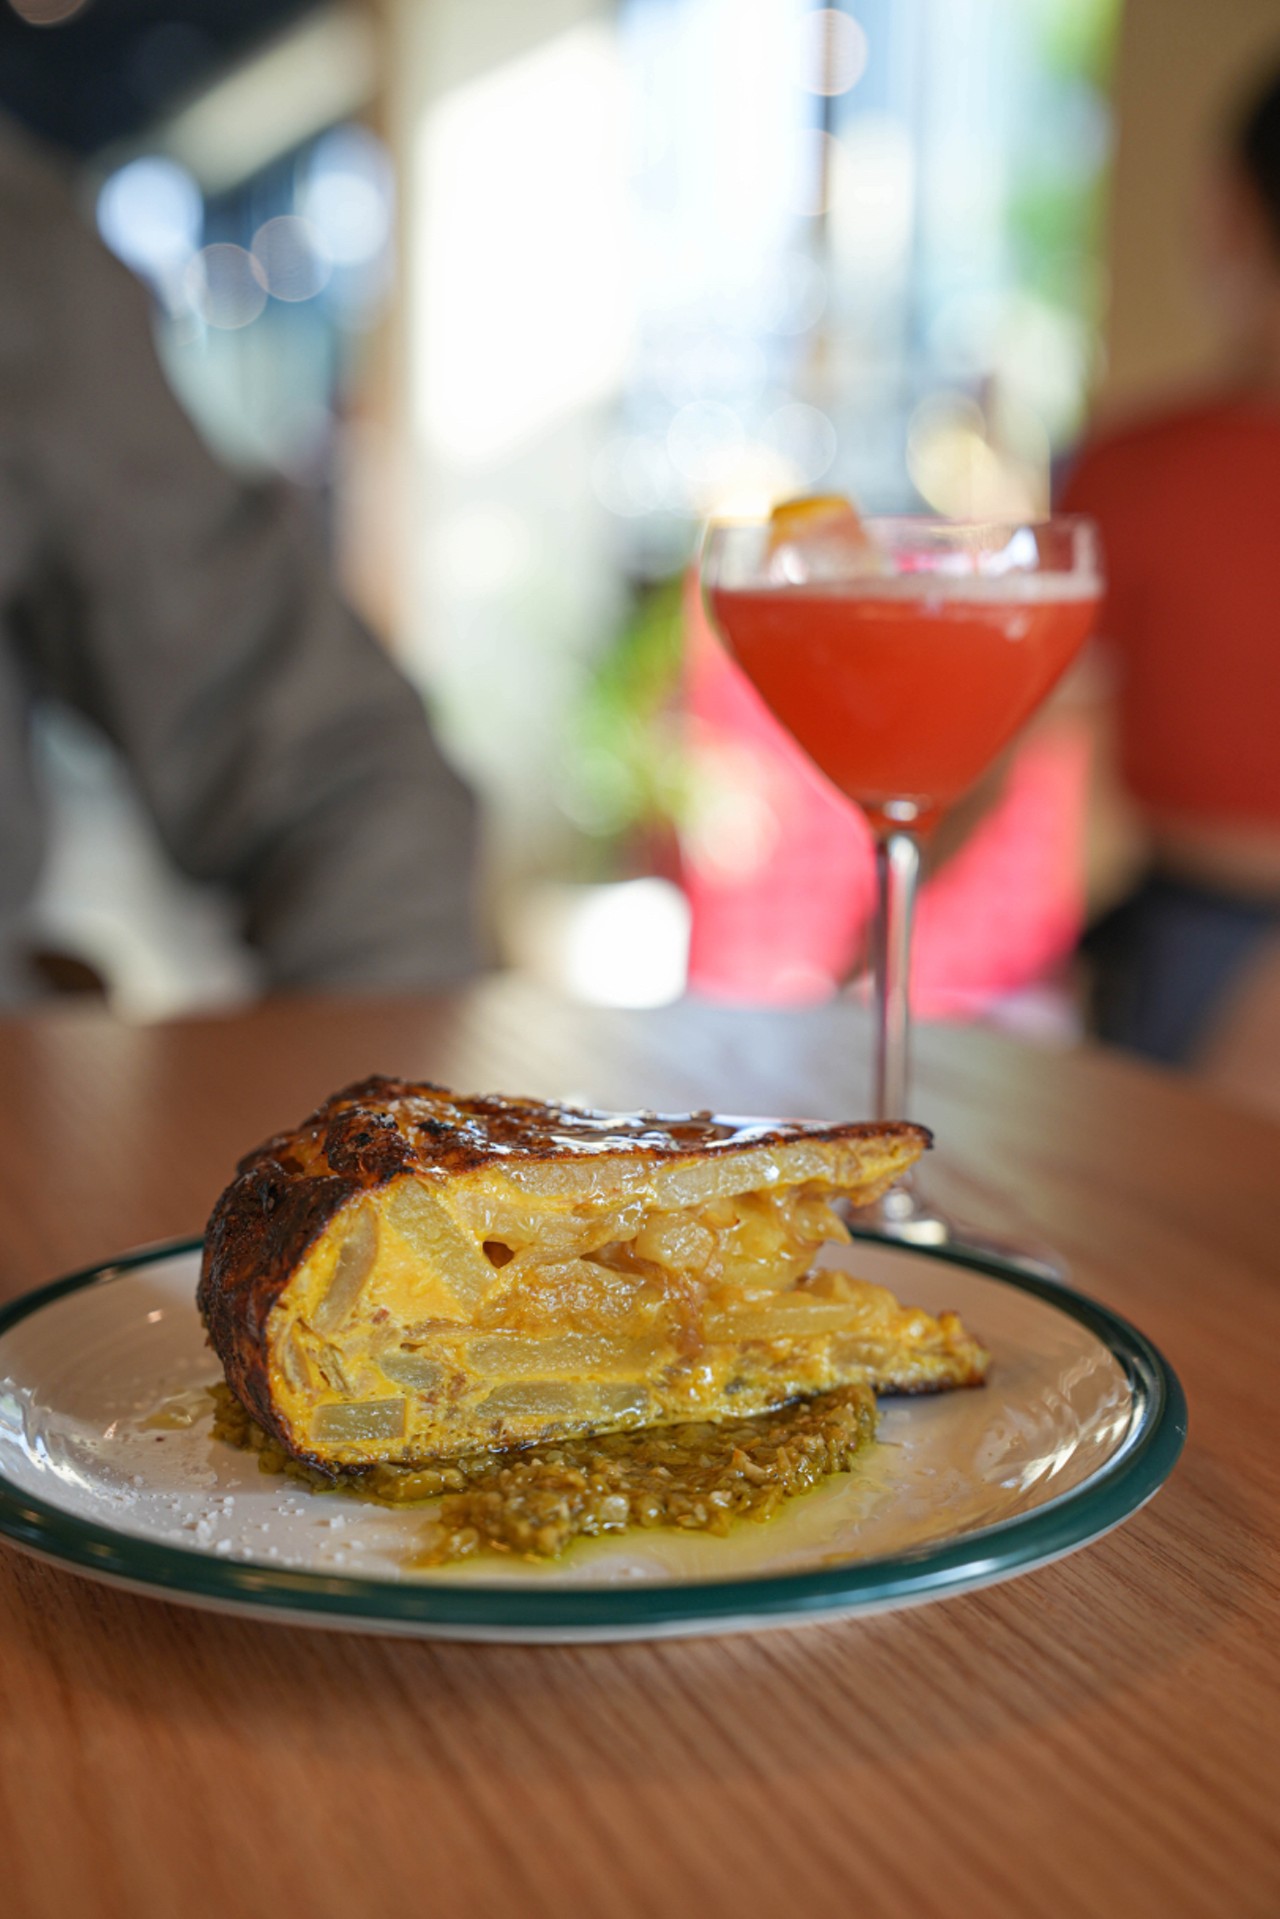 Spanish-inspired restaurant Leña opens this week in Detroit’s Brush Park